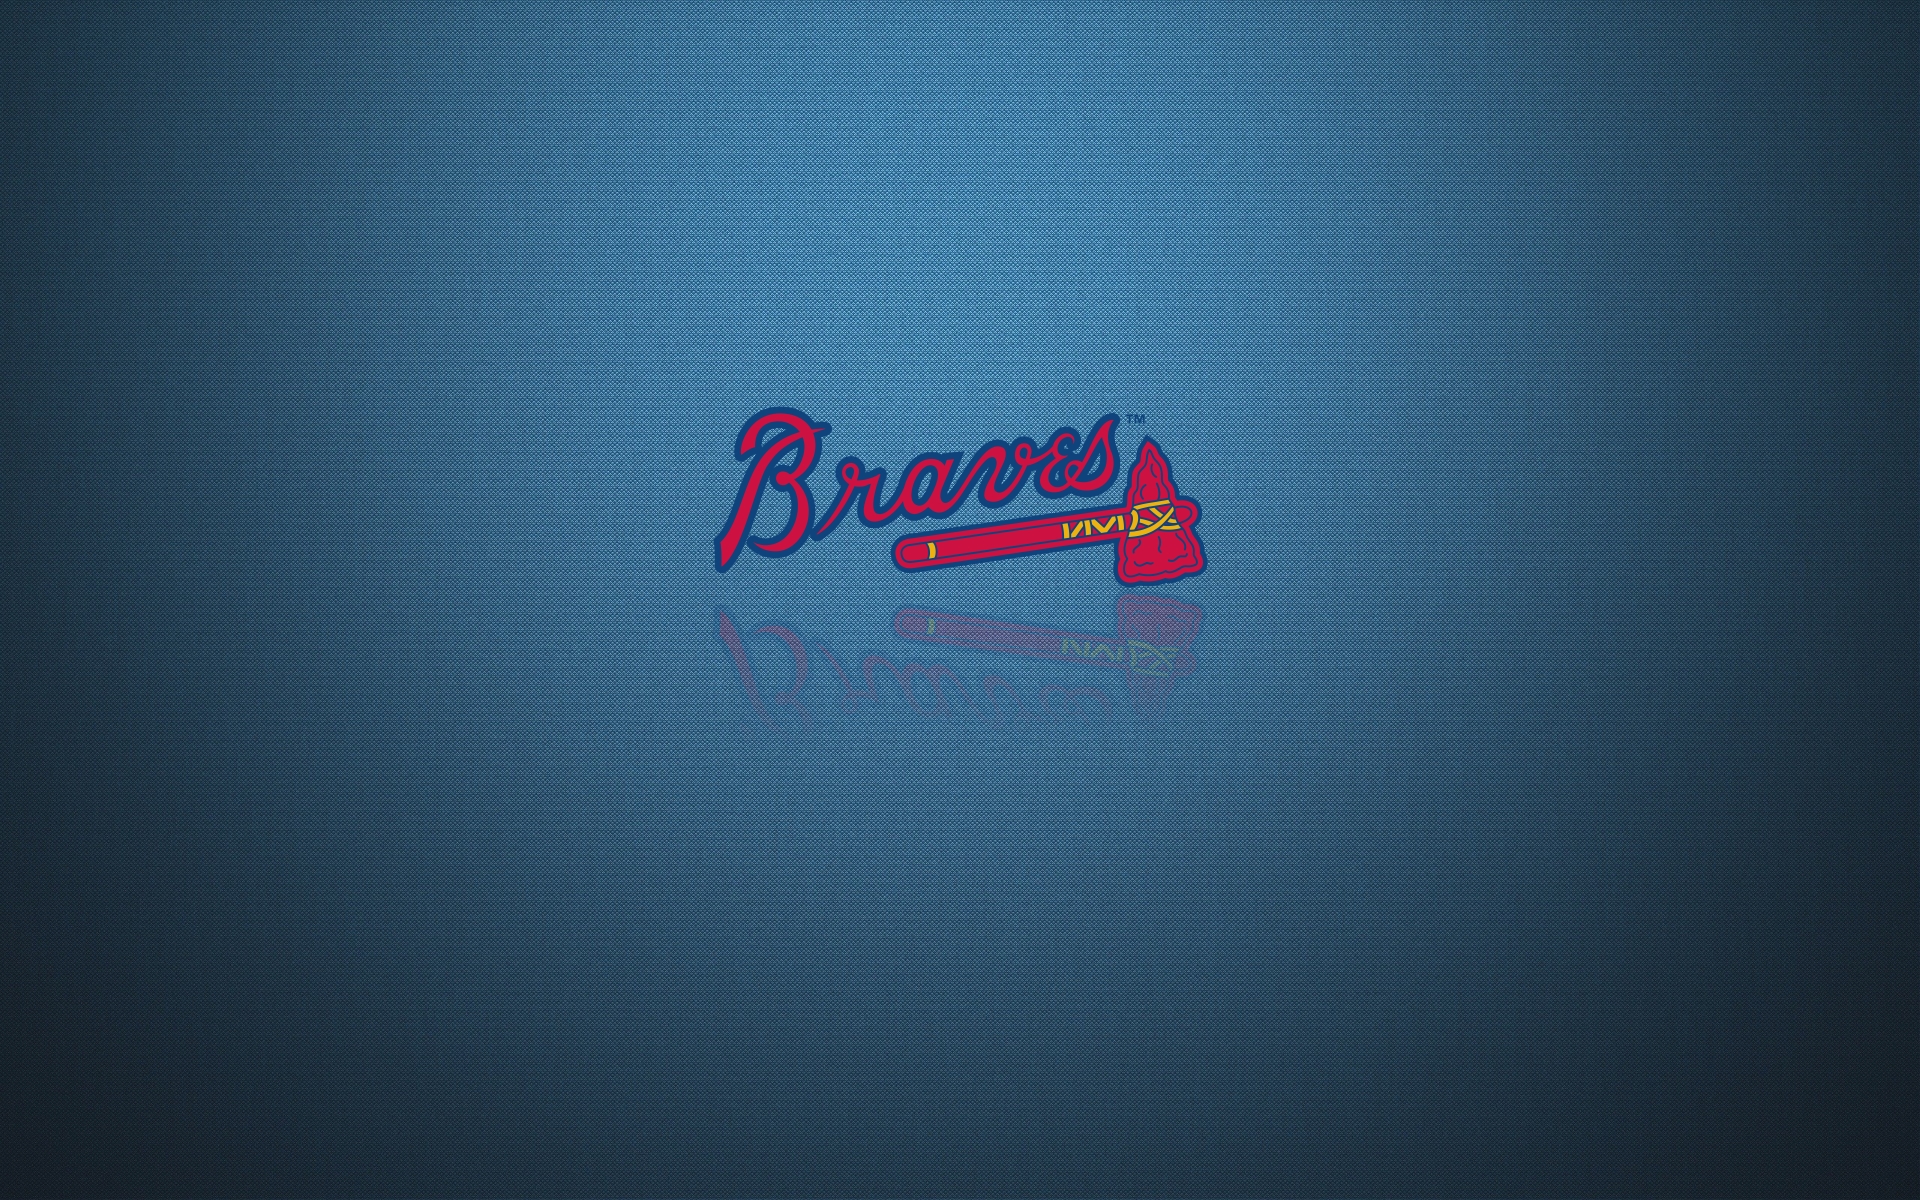 Atlanta Braves Background